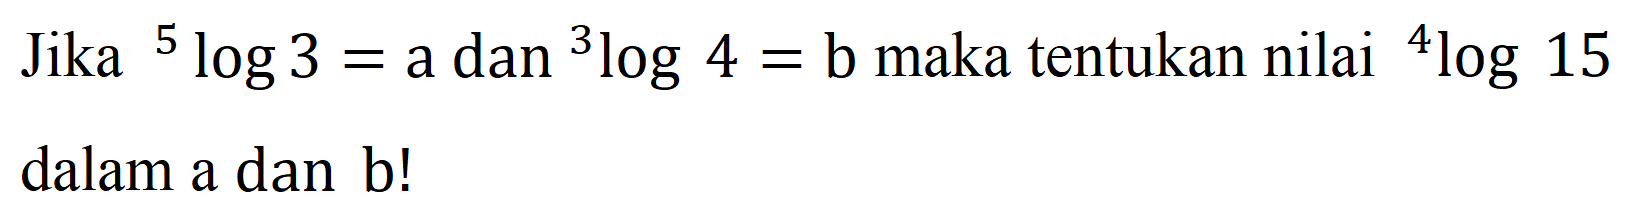 Jika 5log3 = a dan 3log4 = b maka tentukan nilai 4log15 dalam a dan b!